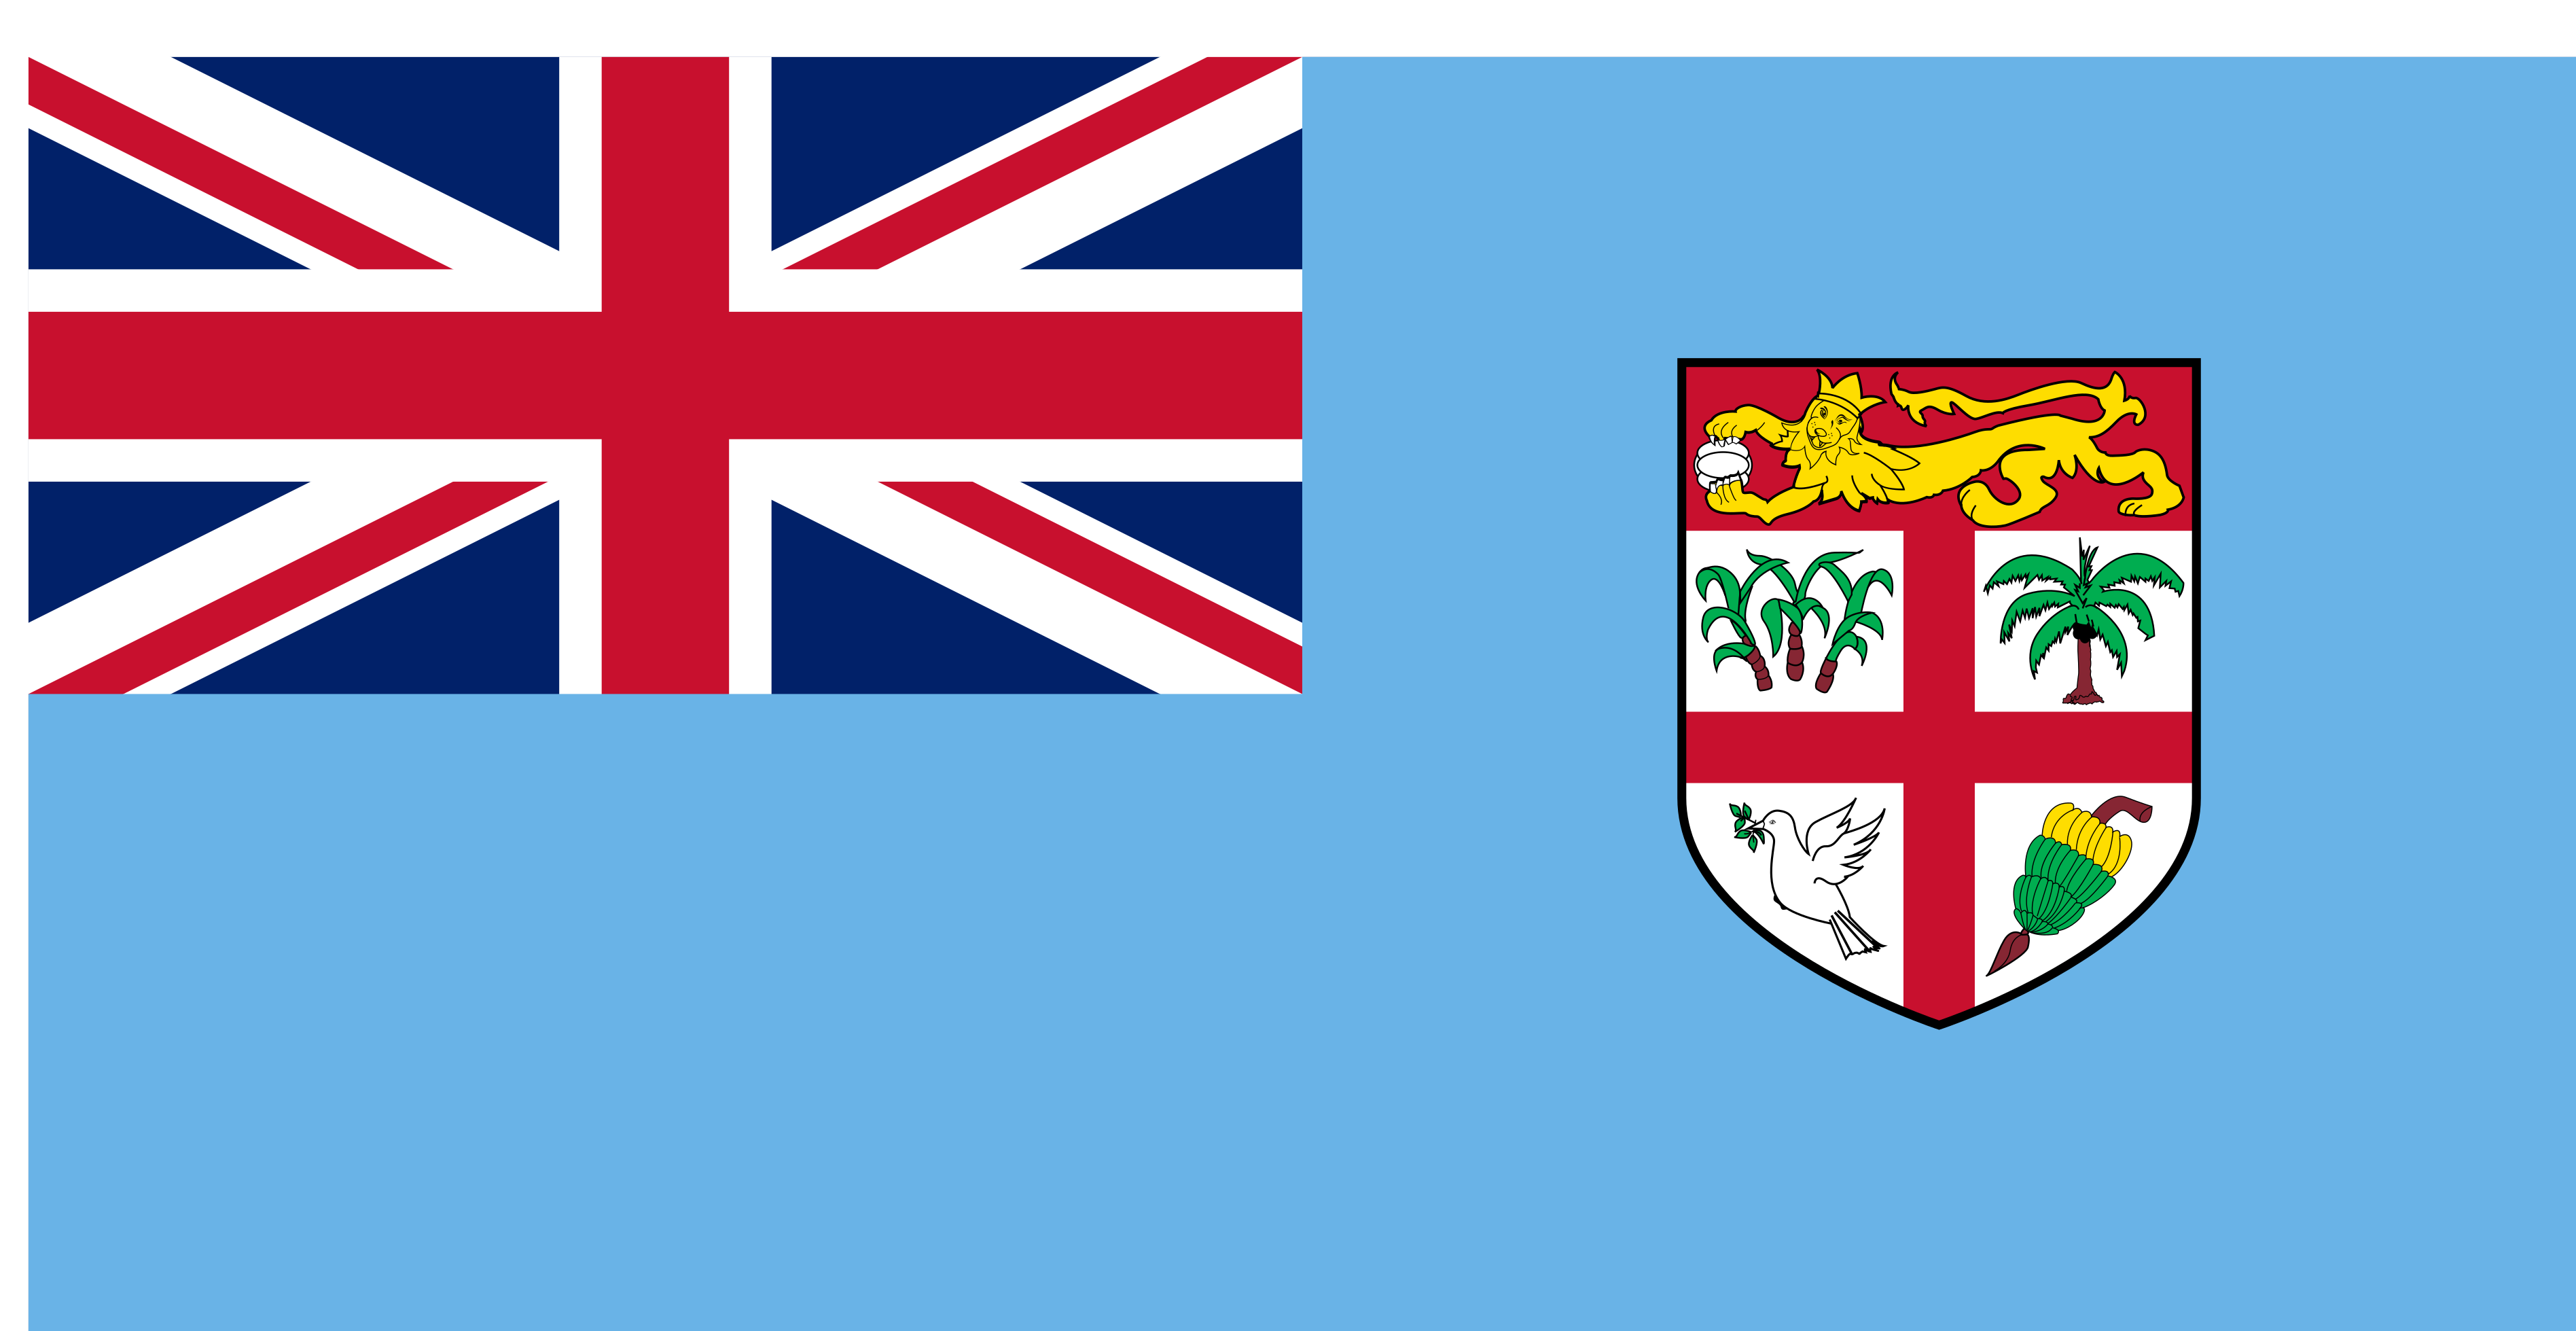 Fiji Flag Image - Free Download